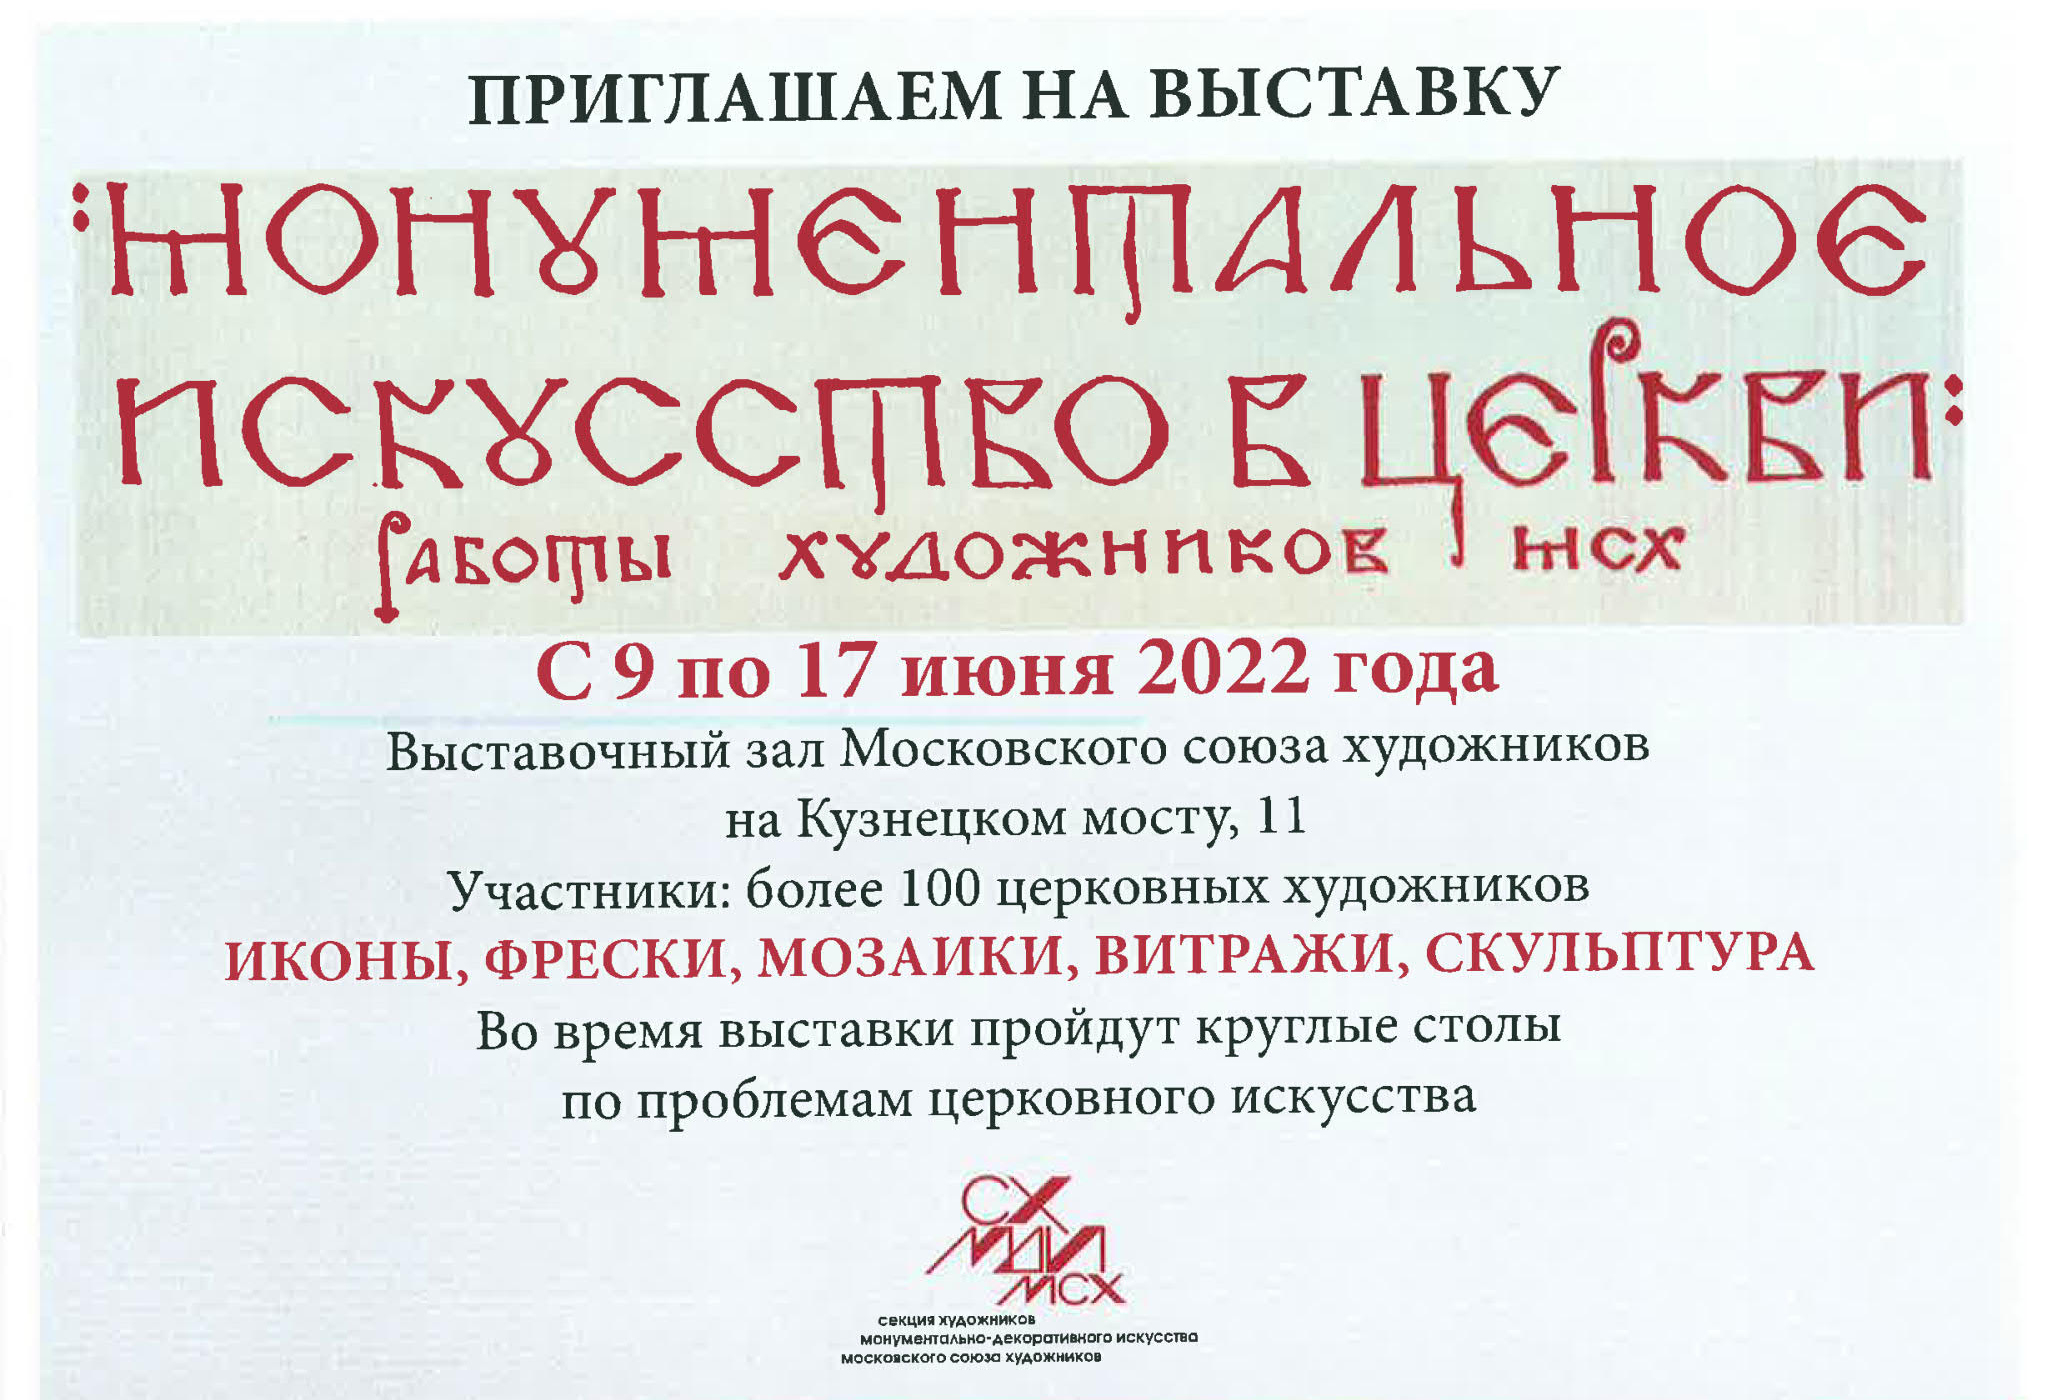 В период с 9 по 17 июня 2022 года в выставочном зале Московского союза художников на Кузнецком мосту, д. 11, пройдет выставка-фестиваль «Монументальное искусство в Церкви»